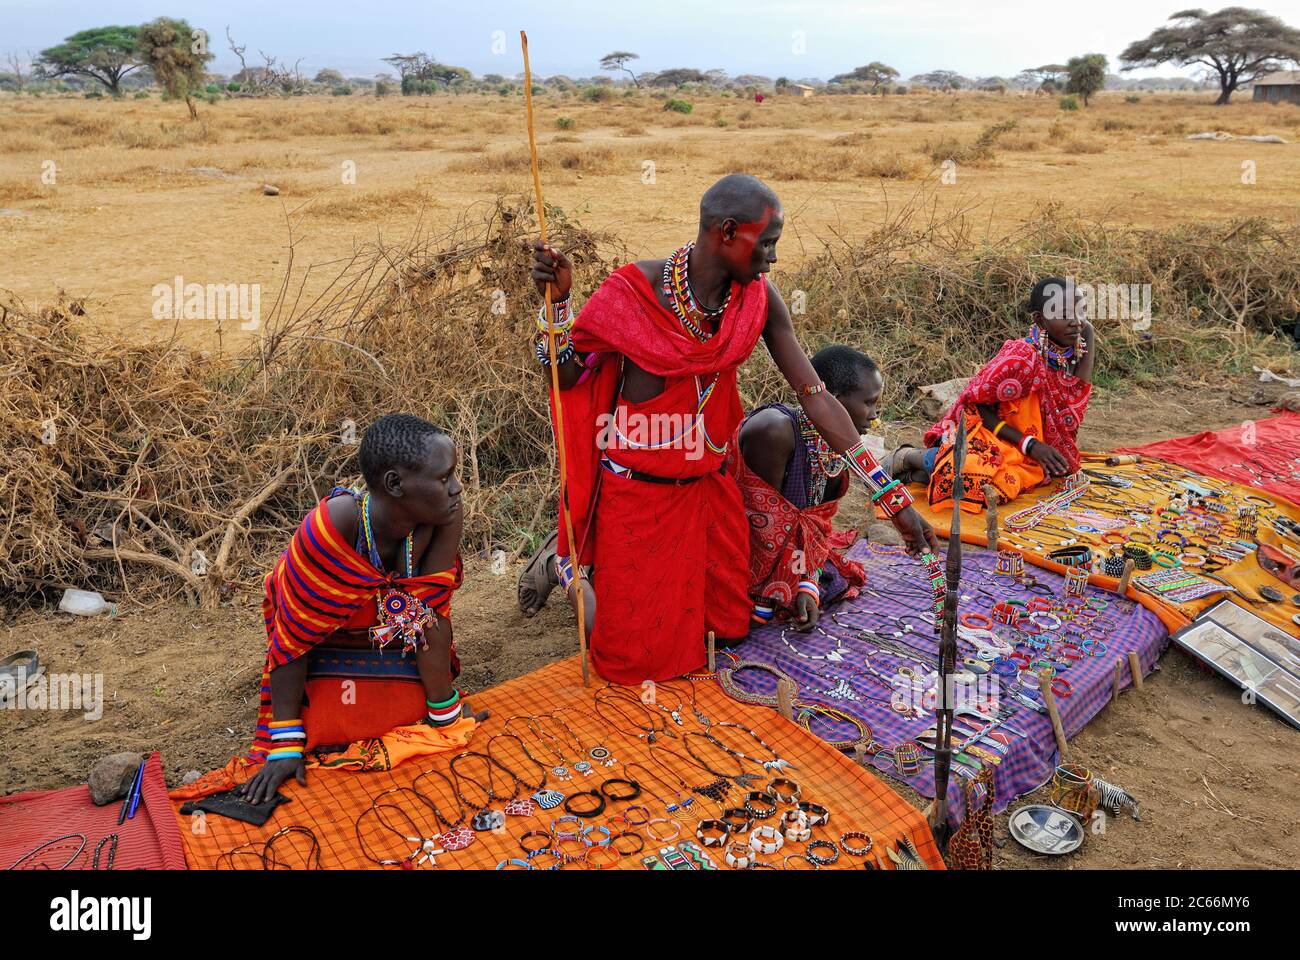 MASAI MARA, KENYA - AGOSTO 24: Venditori locali della tribù Masai offrono merci nel mercato, il 24 Agosto 2010 a Masai Mara. Accessori tradizionali fatti a mano Foto Stock